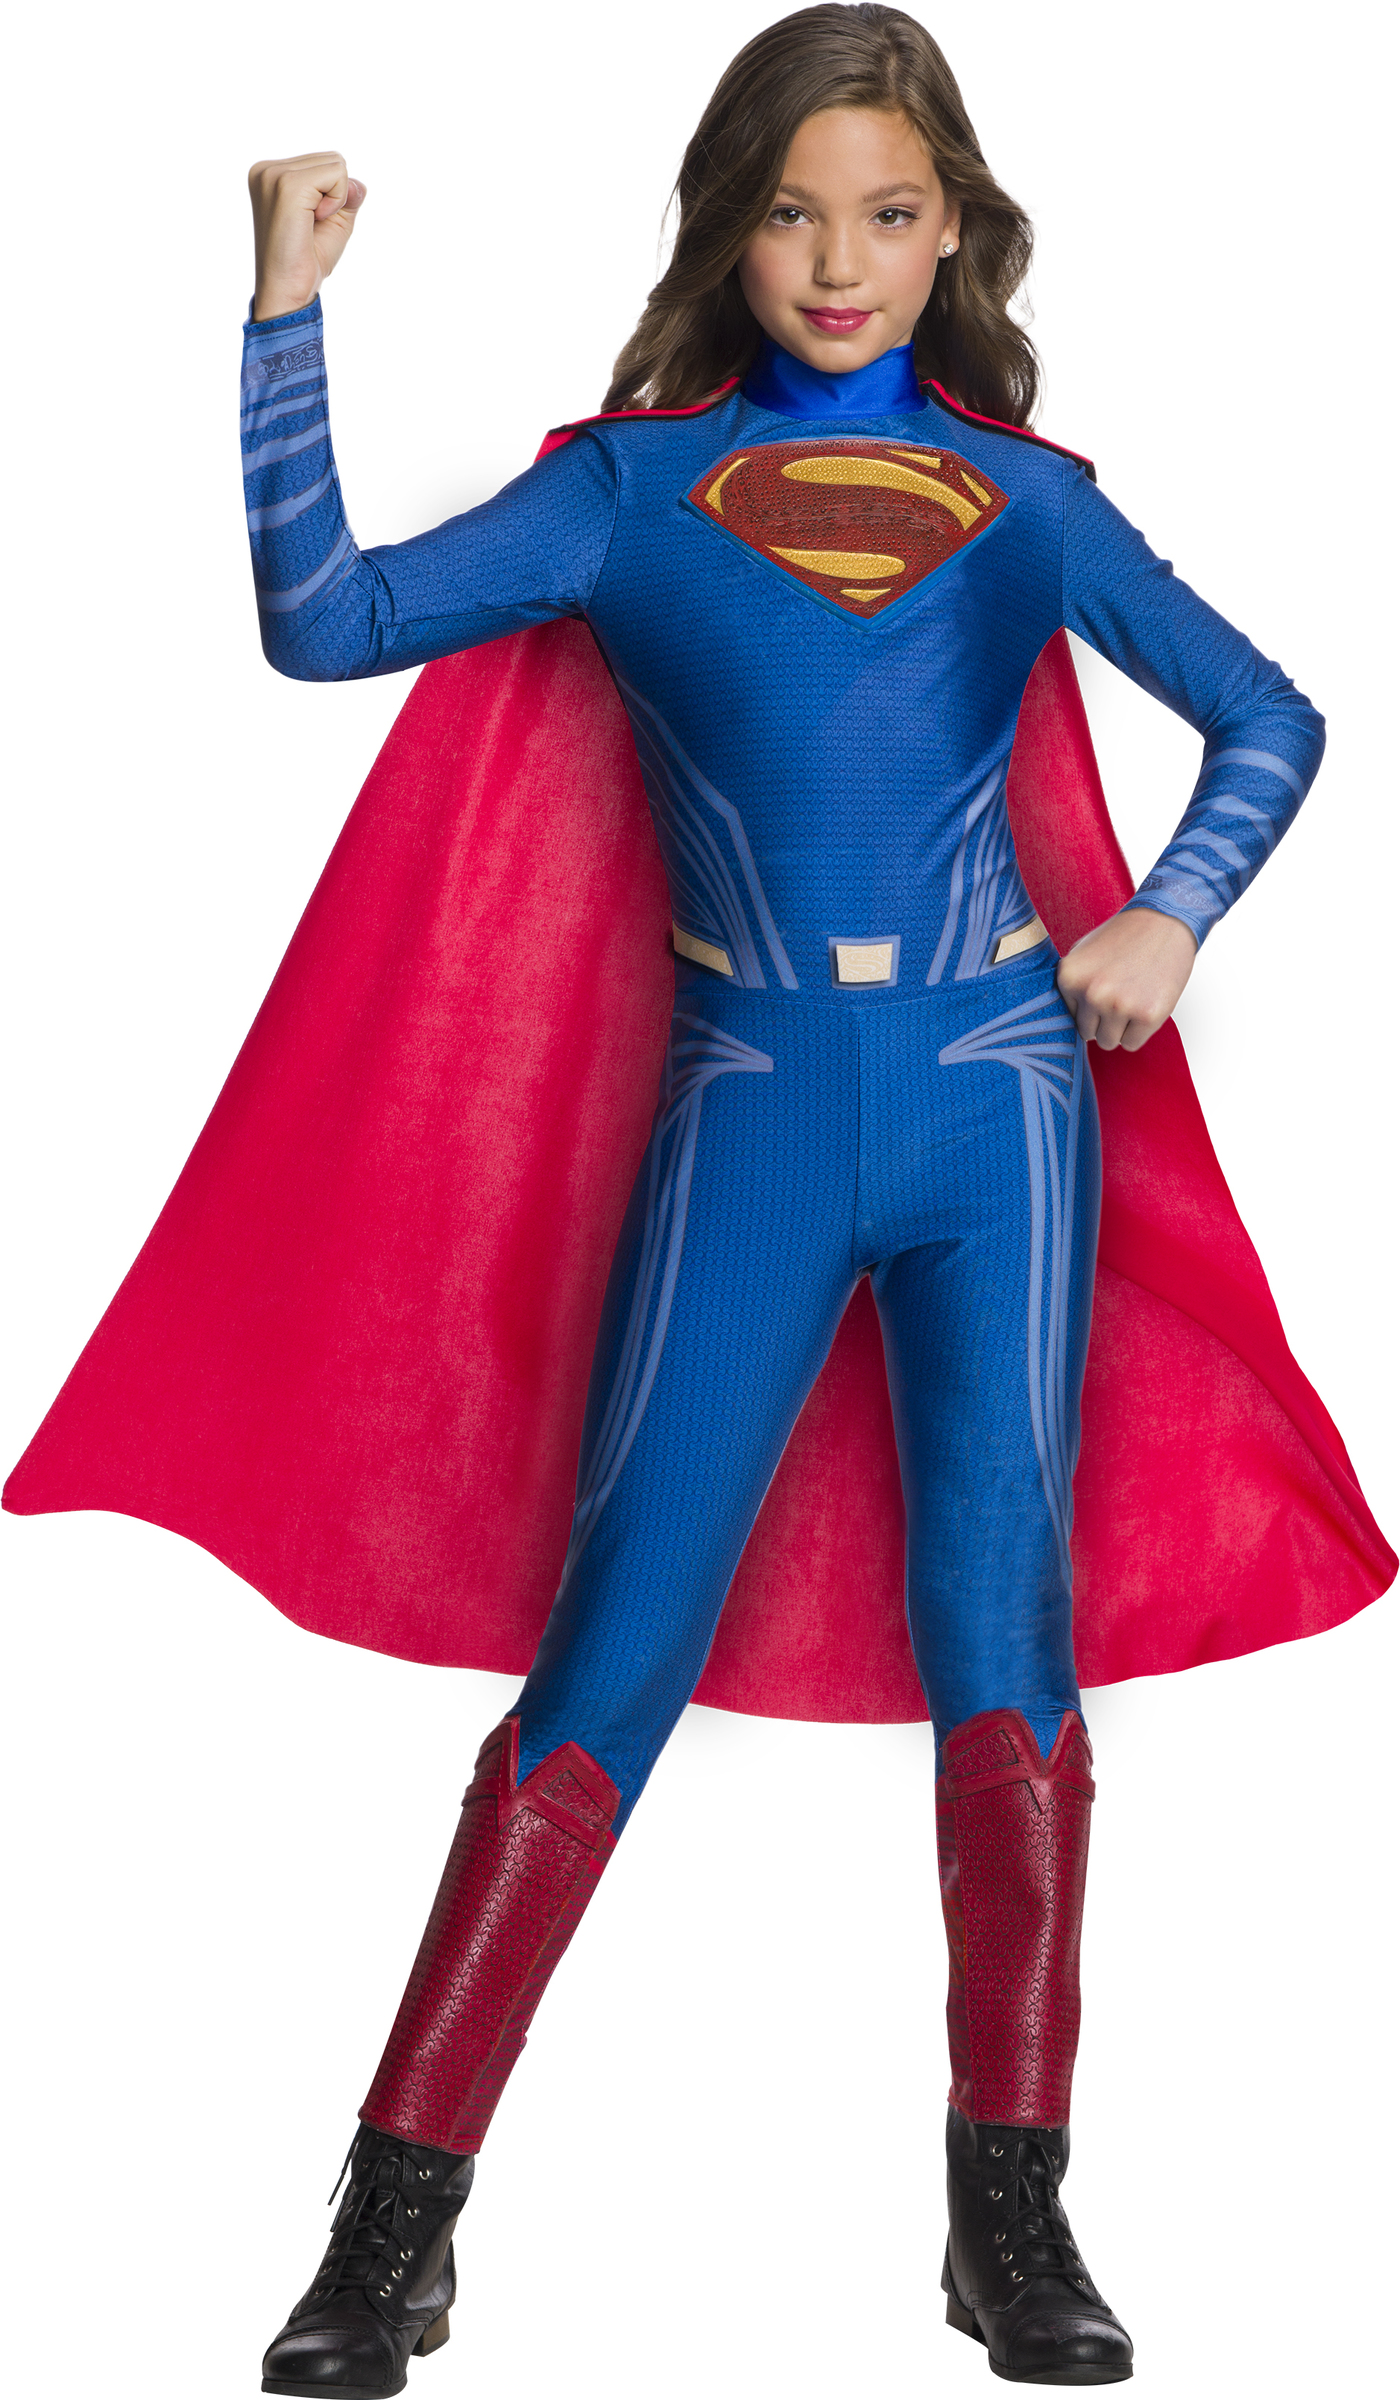 Comprar Disfraz Superman para niña - Liga de la Justicia > Disfraces para Niñas > Disfraces y Villanas Niñas > Disfraces infantiles | Tienda de disfraces en Madrid, disfracestuyyo.com